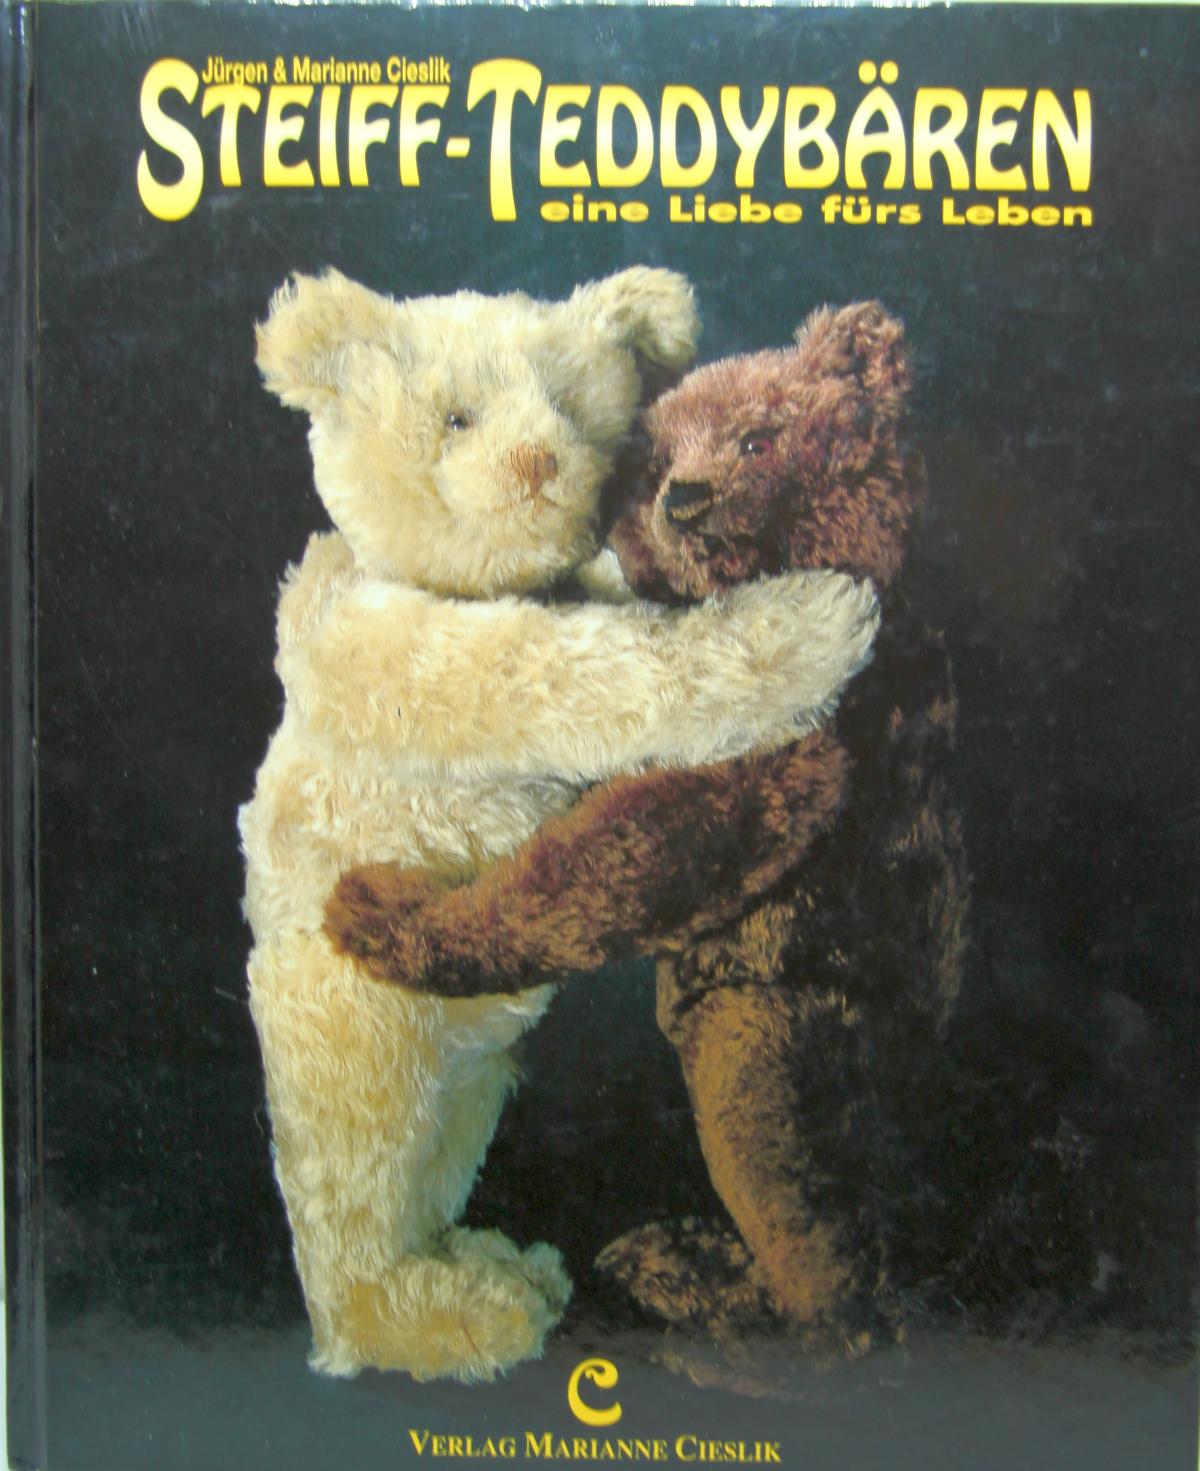 Buch "Steiff-Teddybären eine Liebe fürs Leben" von Jürgen und Marianne Cieslik. Verlag Marianne Cieslik,